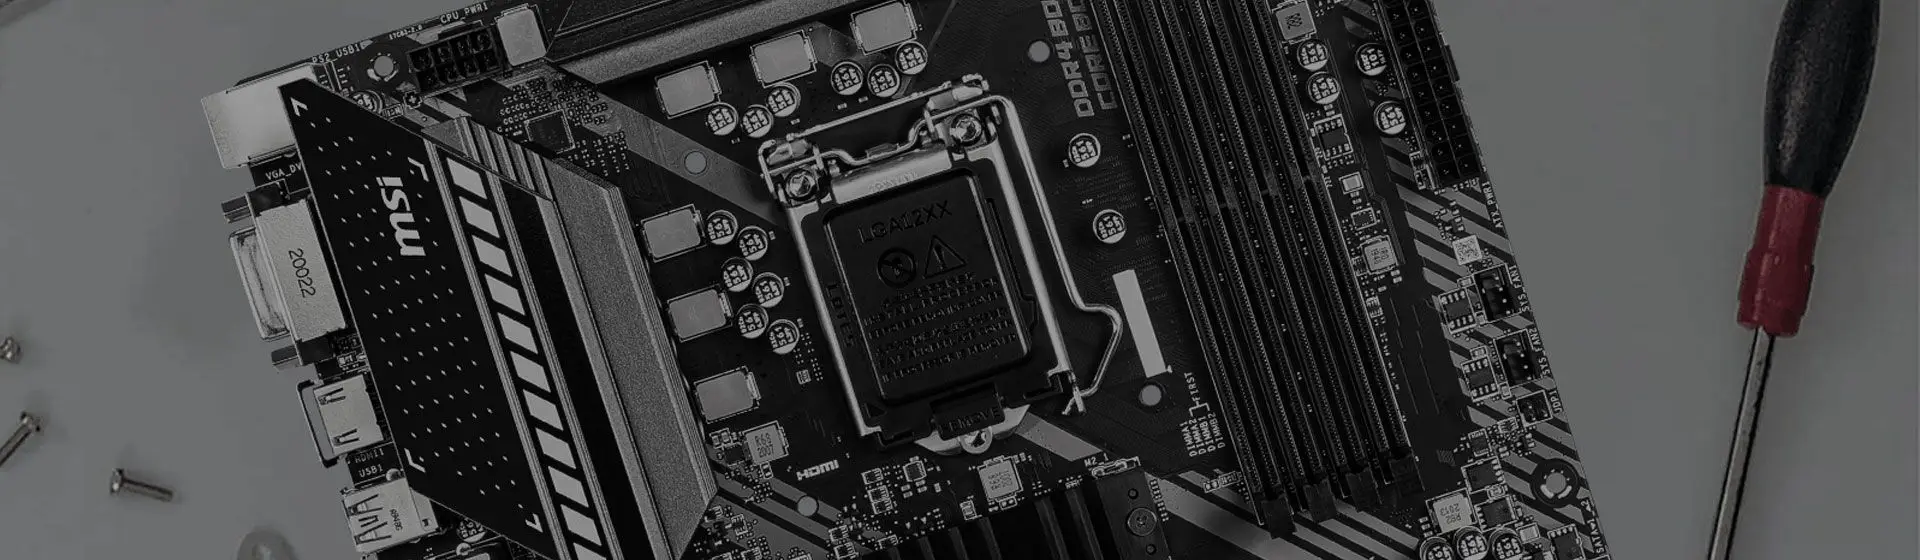 Capa do post: Melhor placa-mãe LGA 1151 para processador Intel: veja nosso top 13